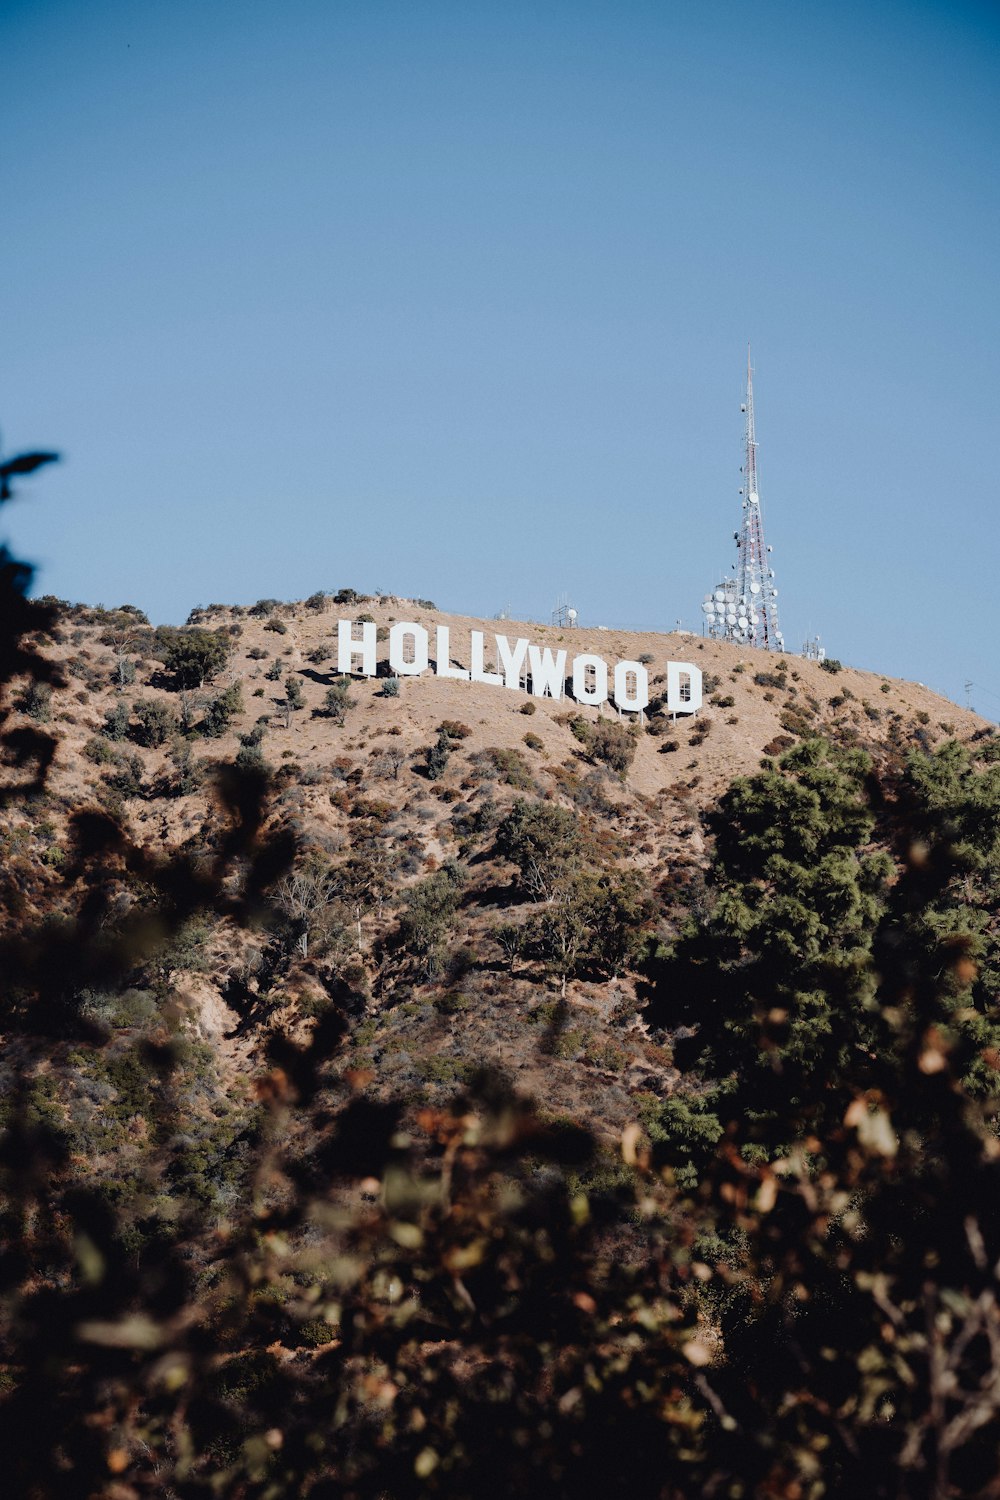 Das Hollywood-Schild befindet sich auf einem Hügel